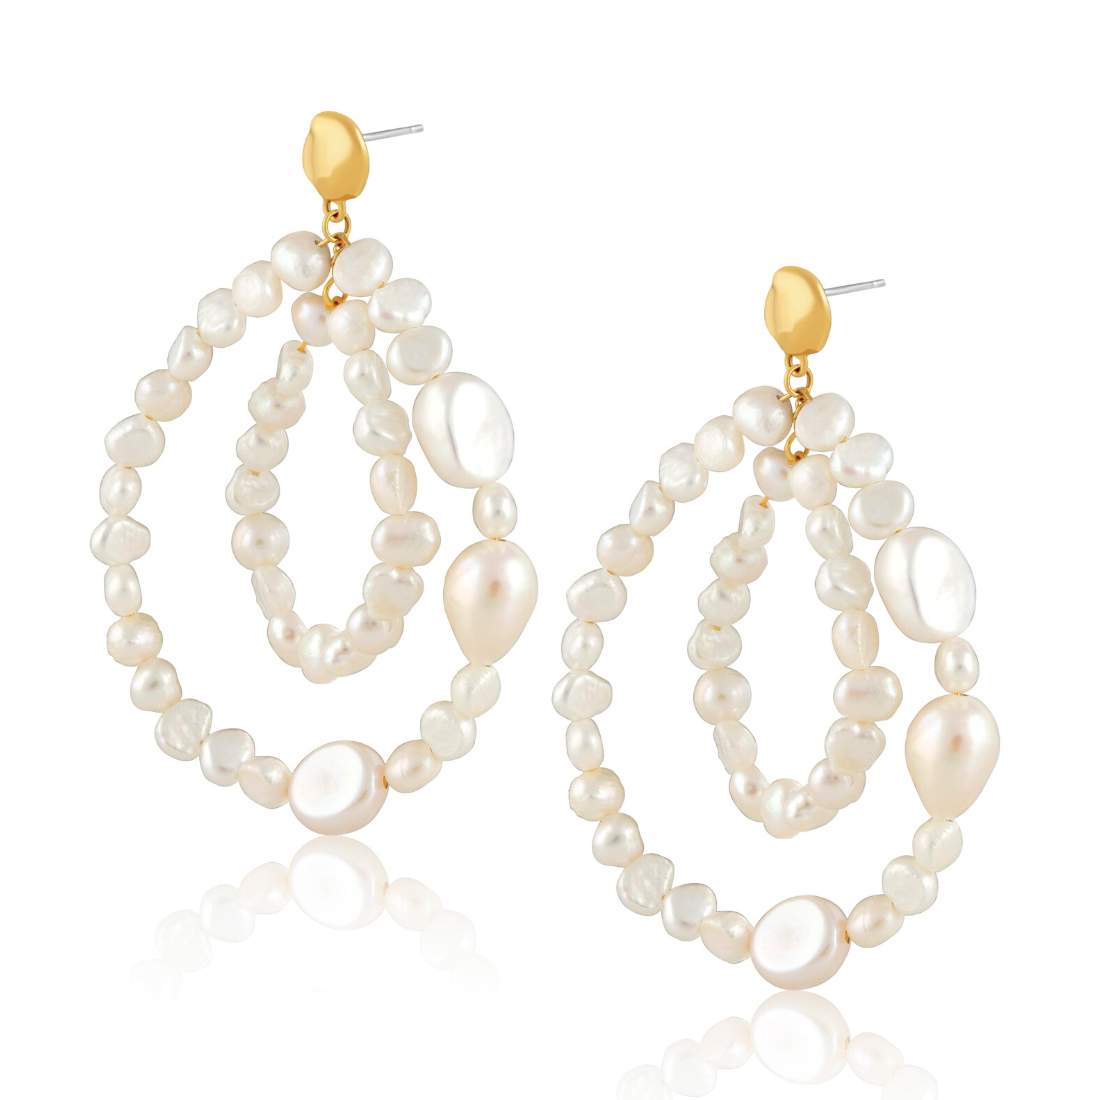 Precious Pearls Teardrop Earrings on display